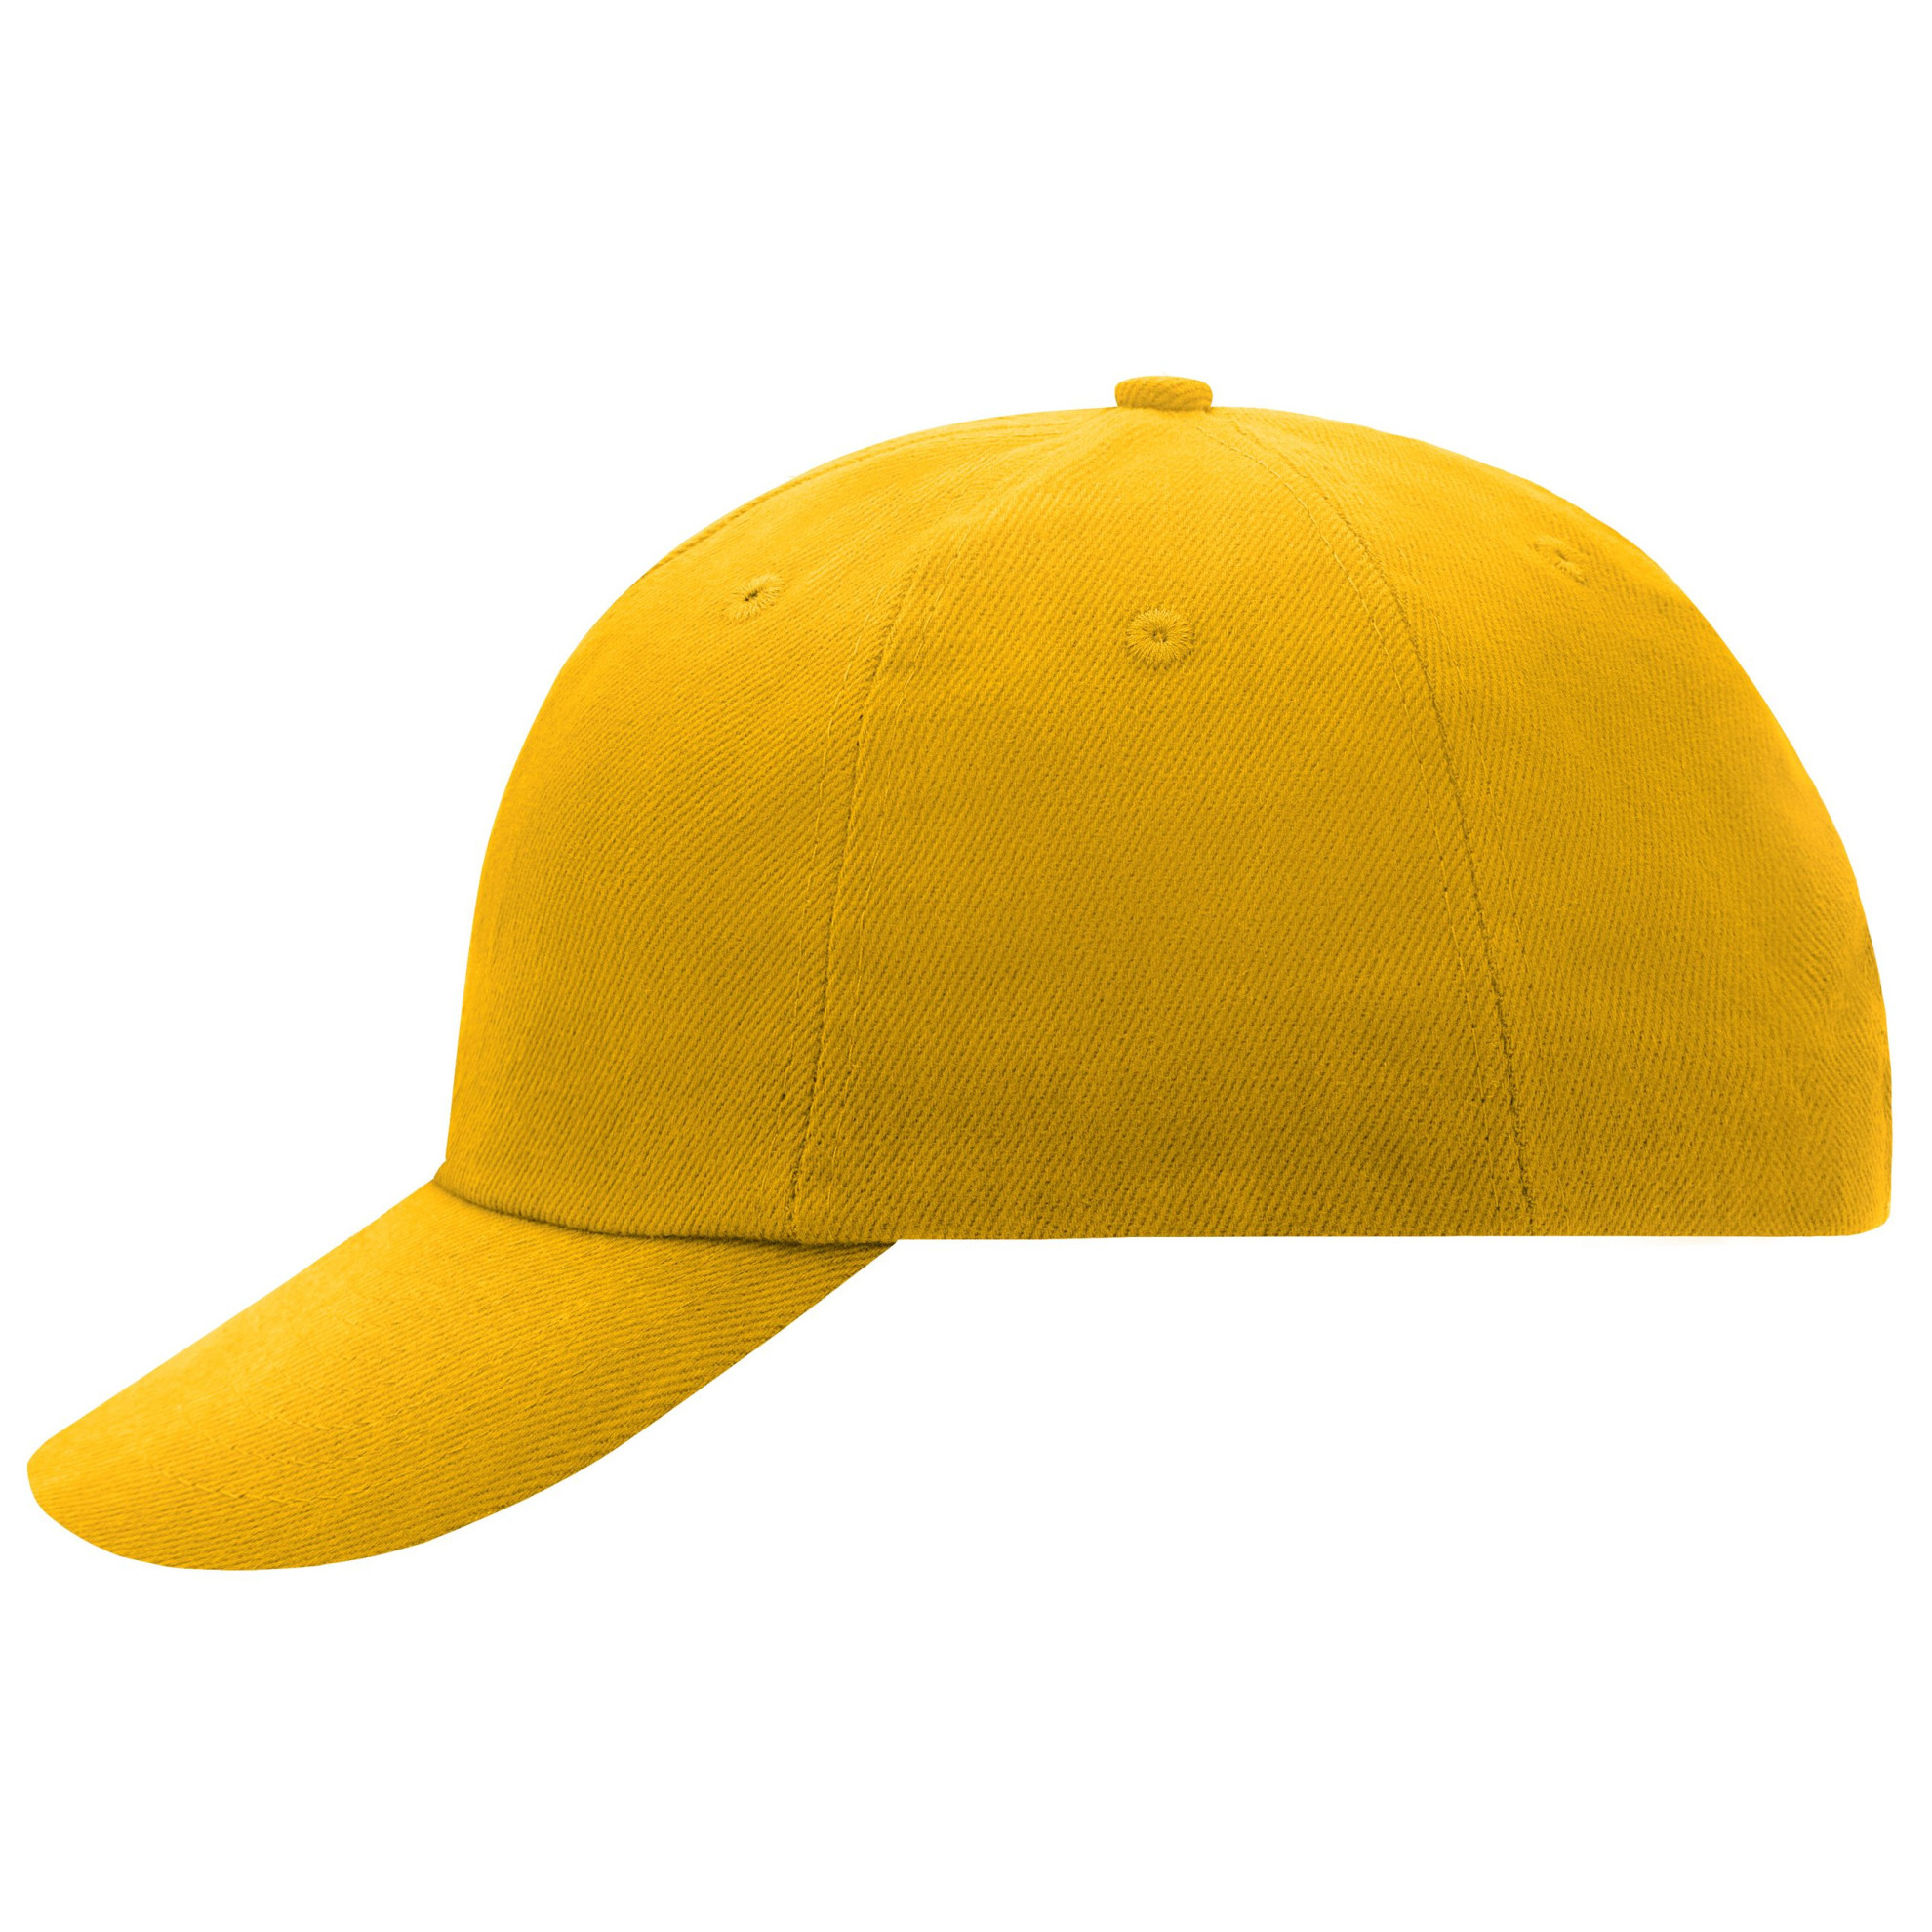 Goud gele baseballcap voor volwassenen